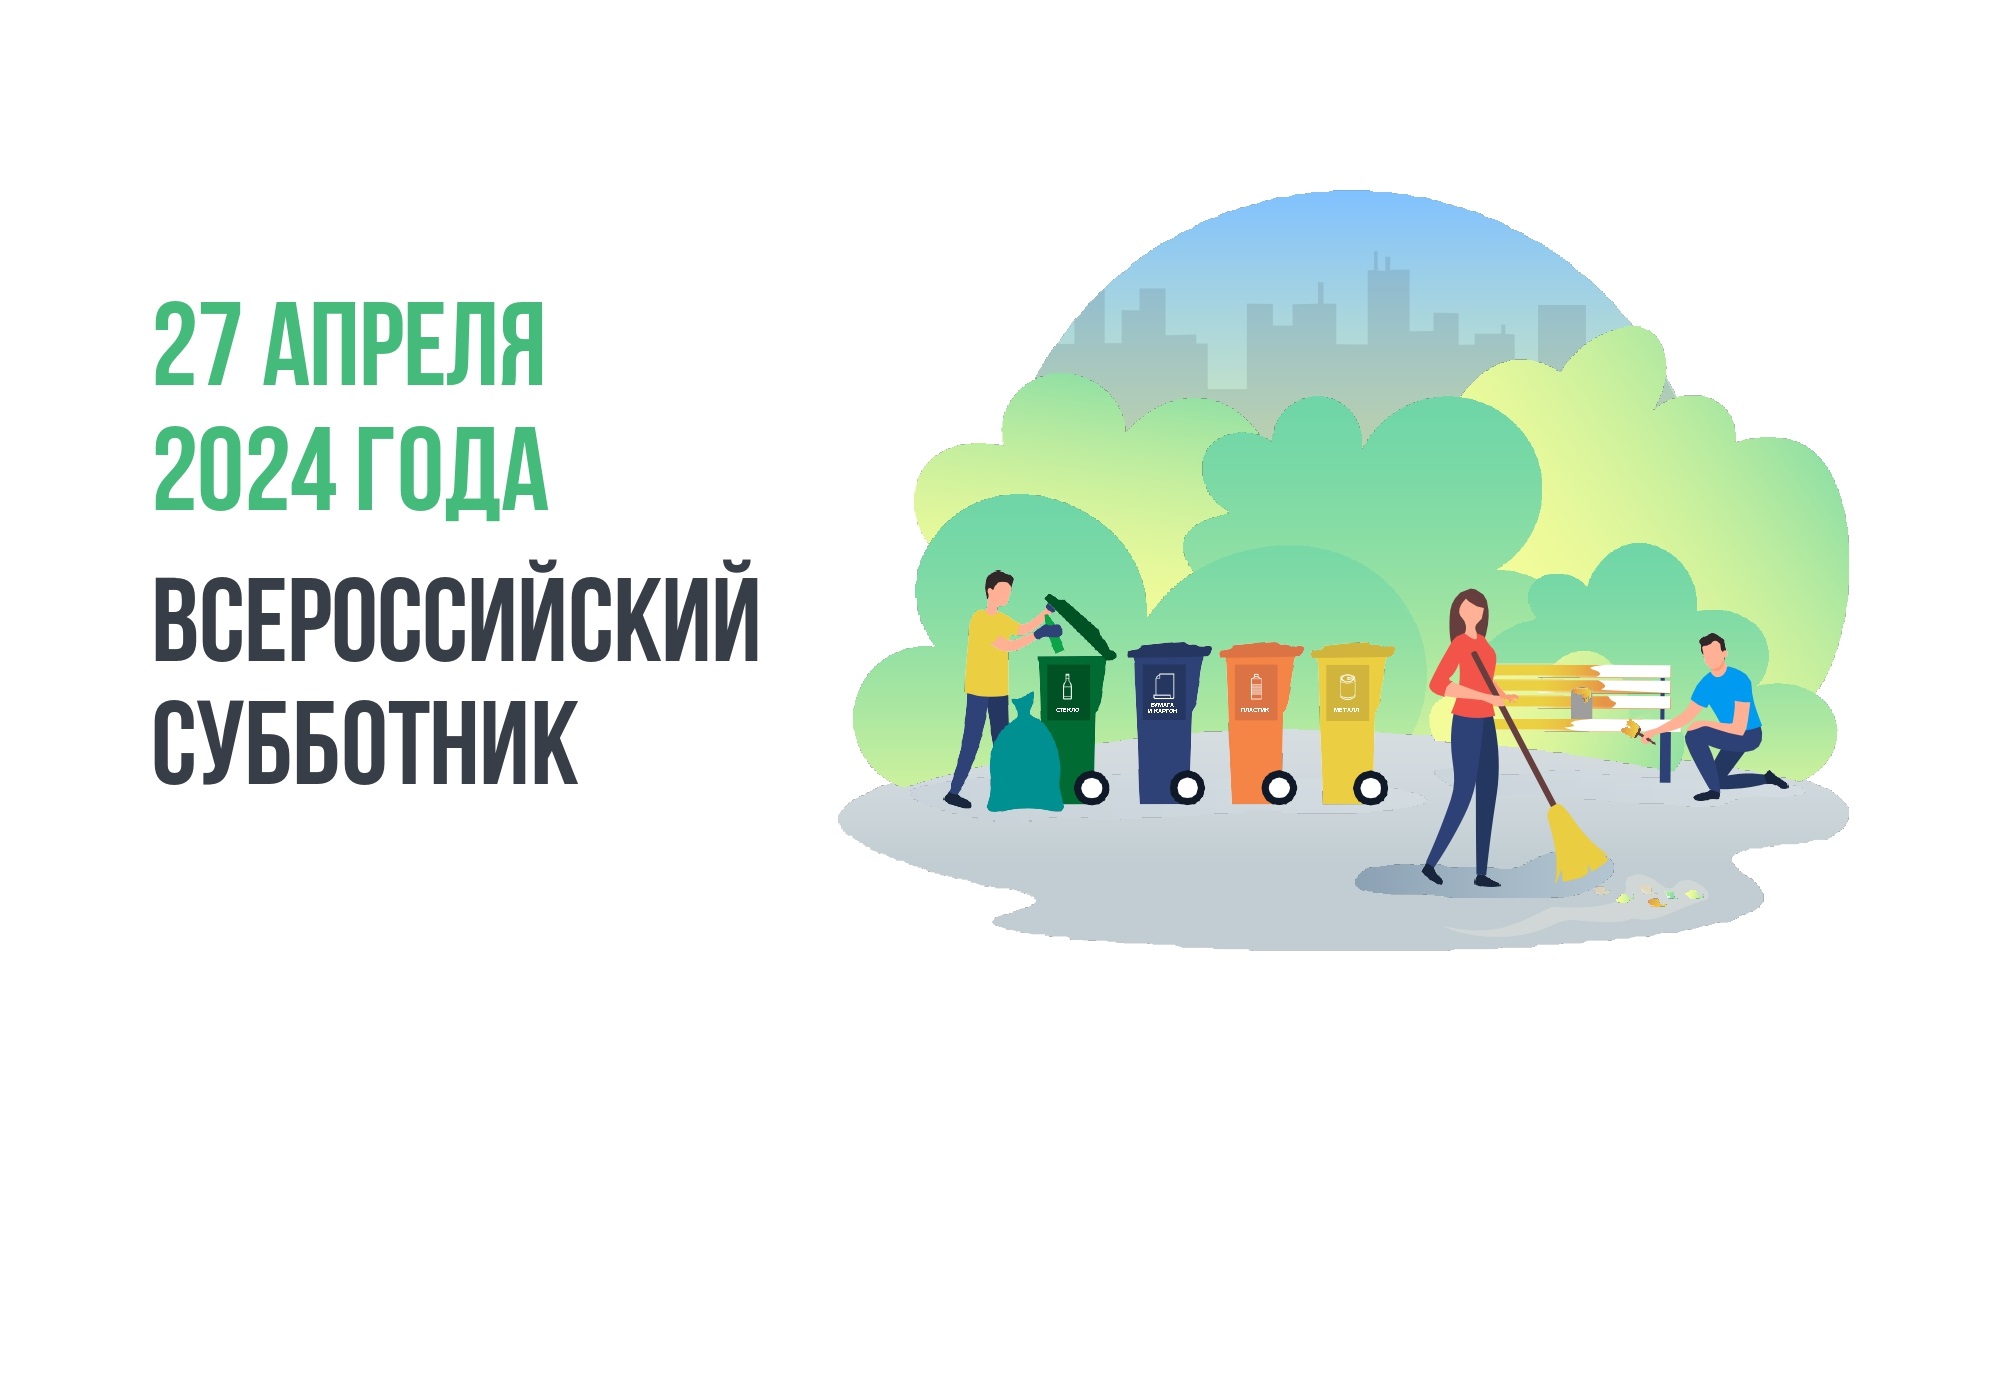 26 апреля в г. Новоалтайске на общественных территориях,  благоустроенных в рамках реализации федерального проекта «Формирование комфортной городской среды» пройдет Всероссийский субботник.